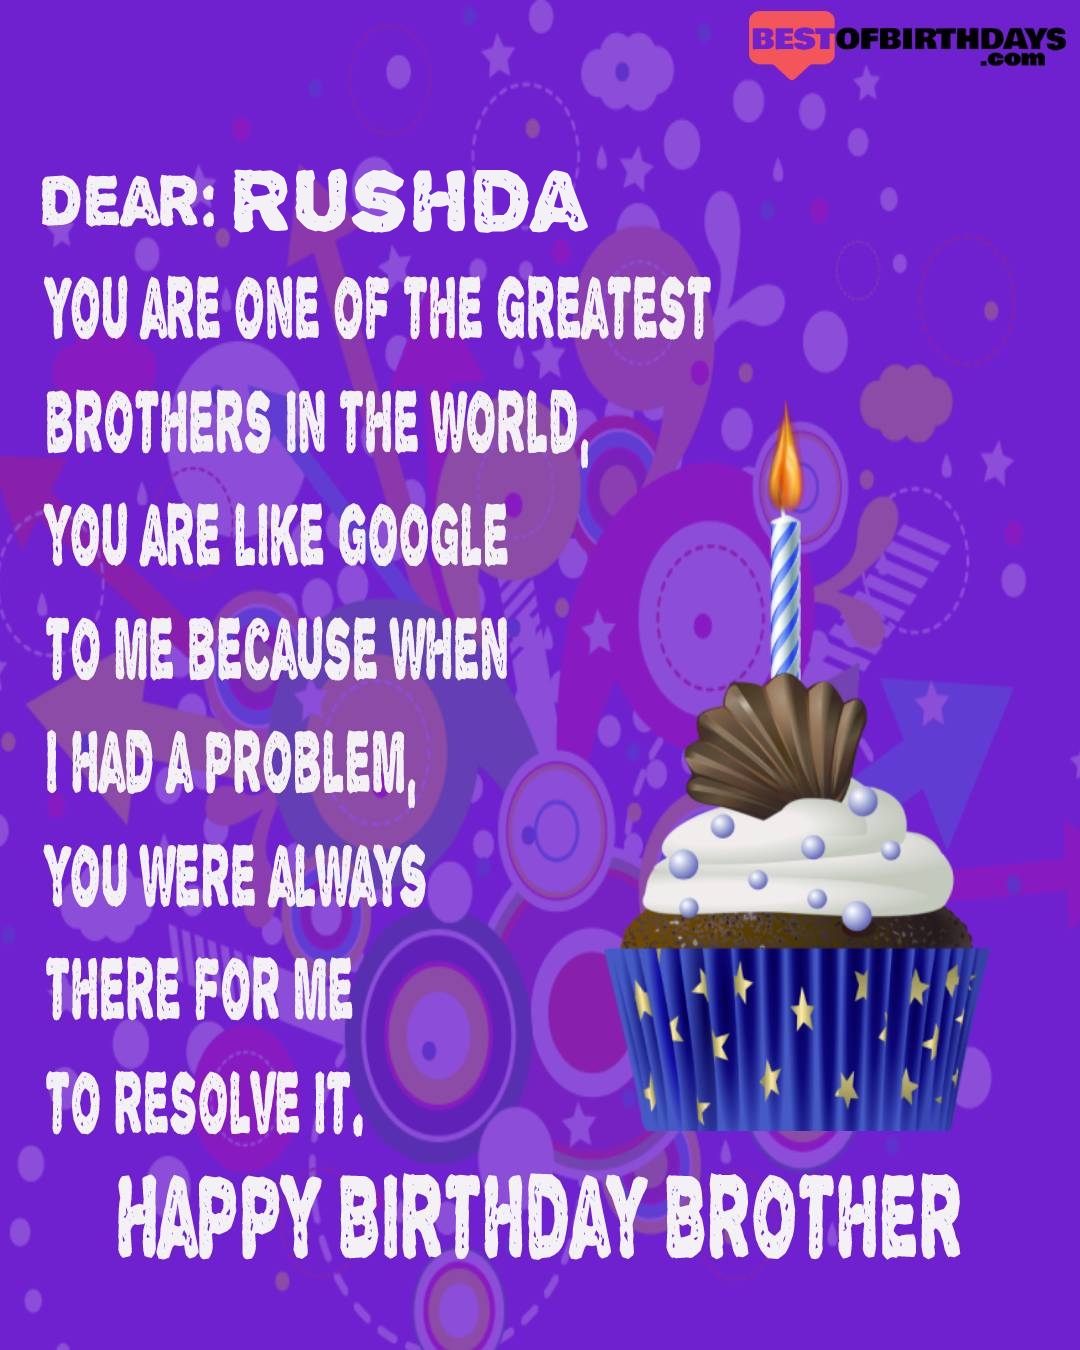 Happy birthday rushda bhai brother bro